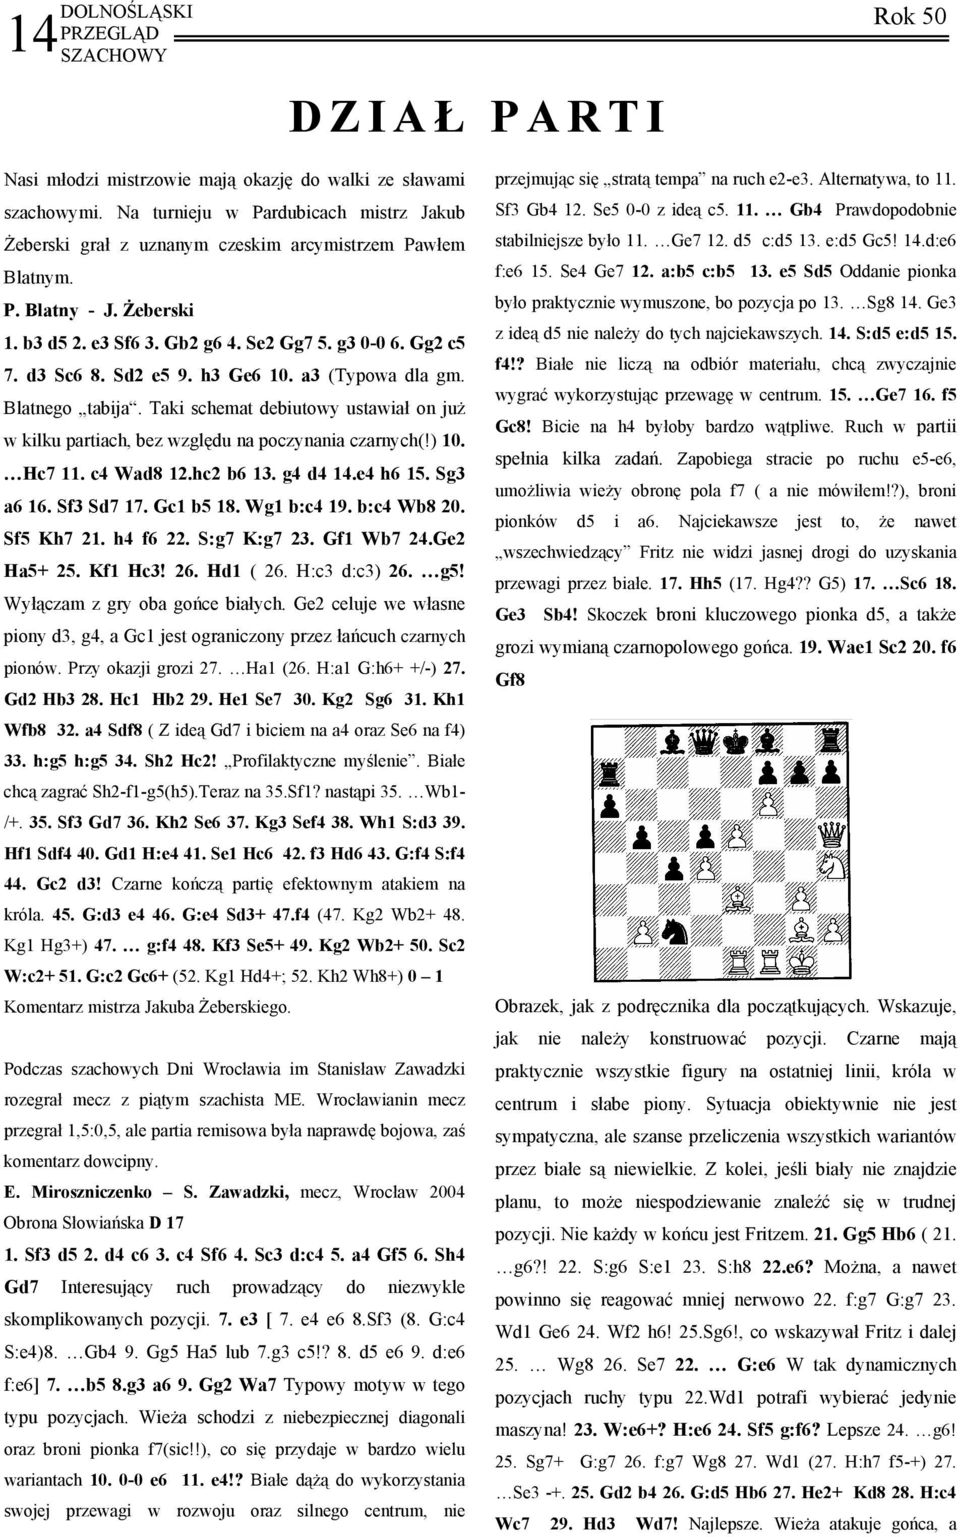 Taki schemat debiutowy ustawiał on już w kilku partiach, bez względu na poczynania czarnych(!) 10. Hc7 11. c4 Wad8 12.hc2 b6 13. g4 d4 14.e4 h6 15. Sg3 a6 16. Sf3 Sd7 17. Gc1 b5 18. Wg1 b:c4 19.